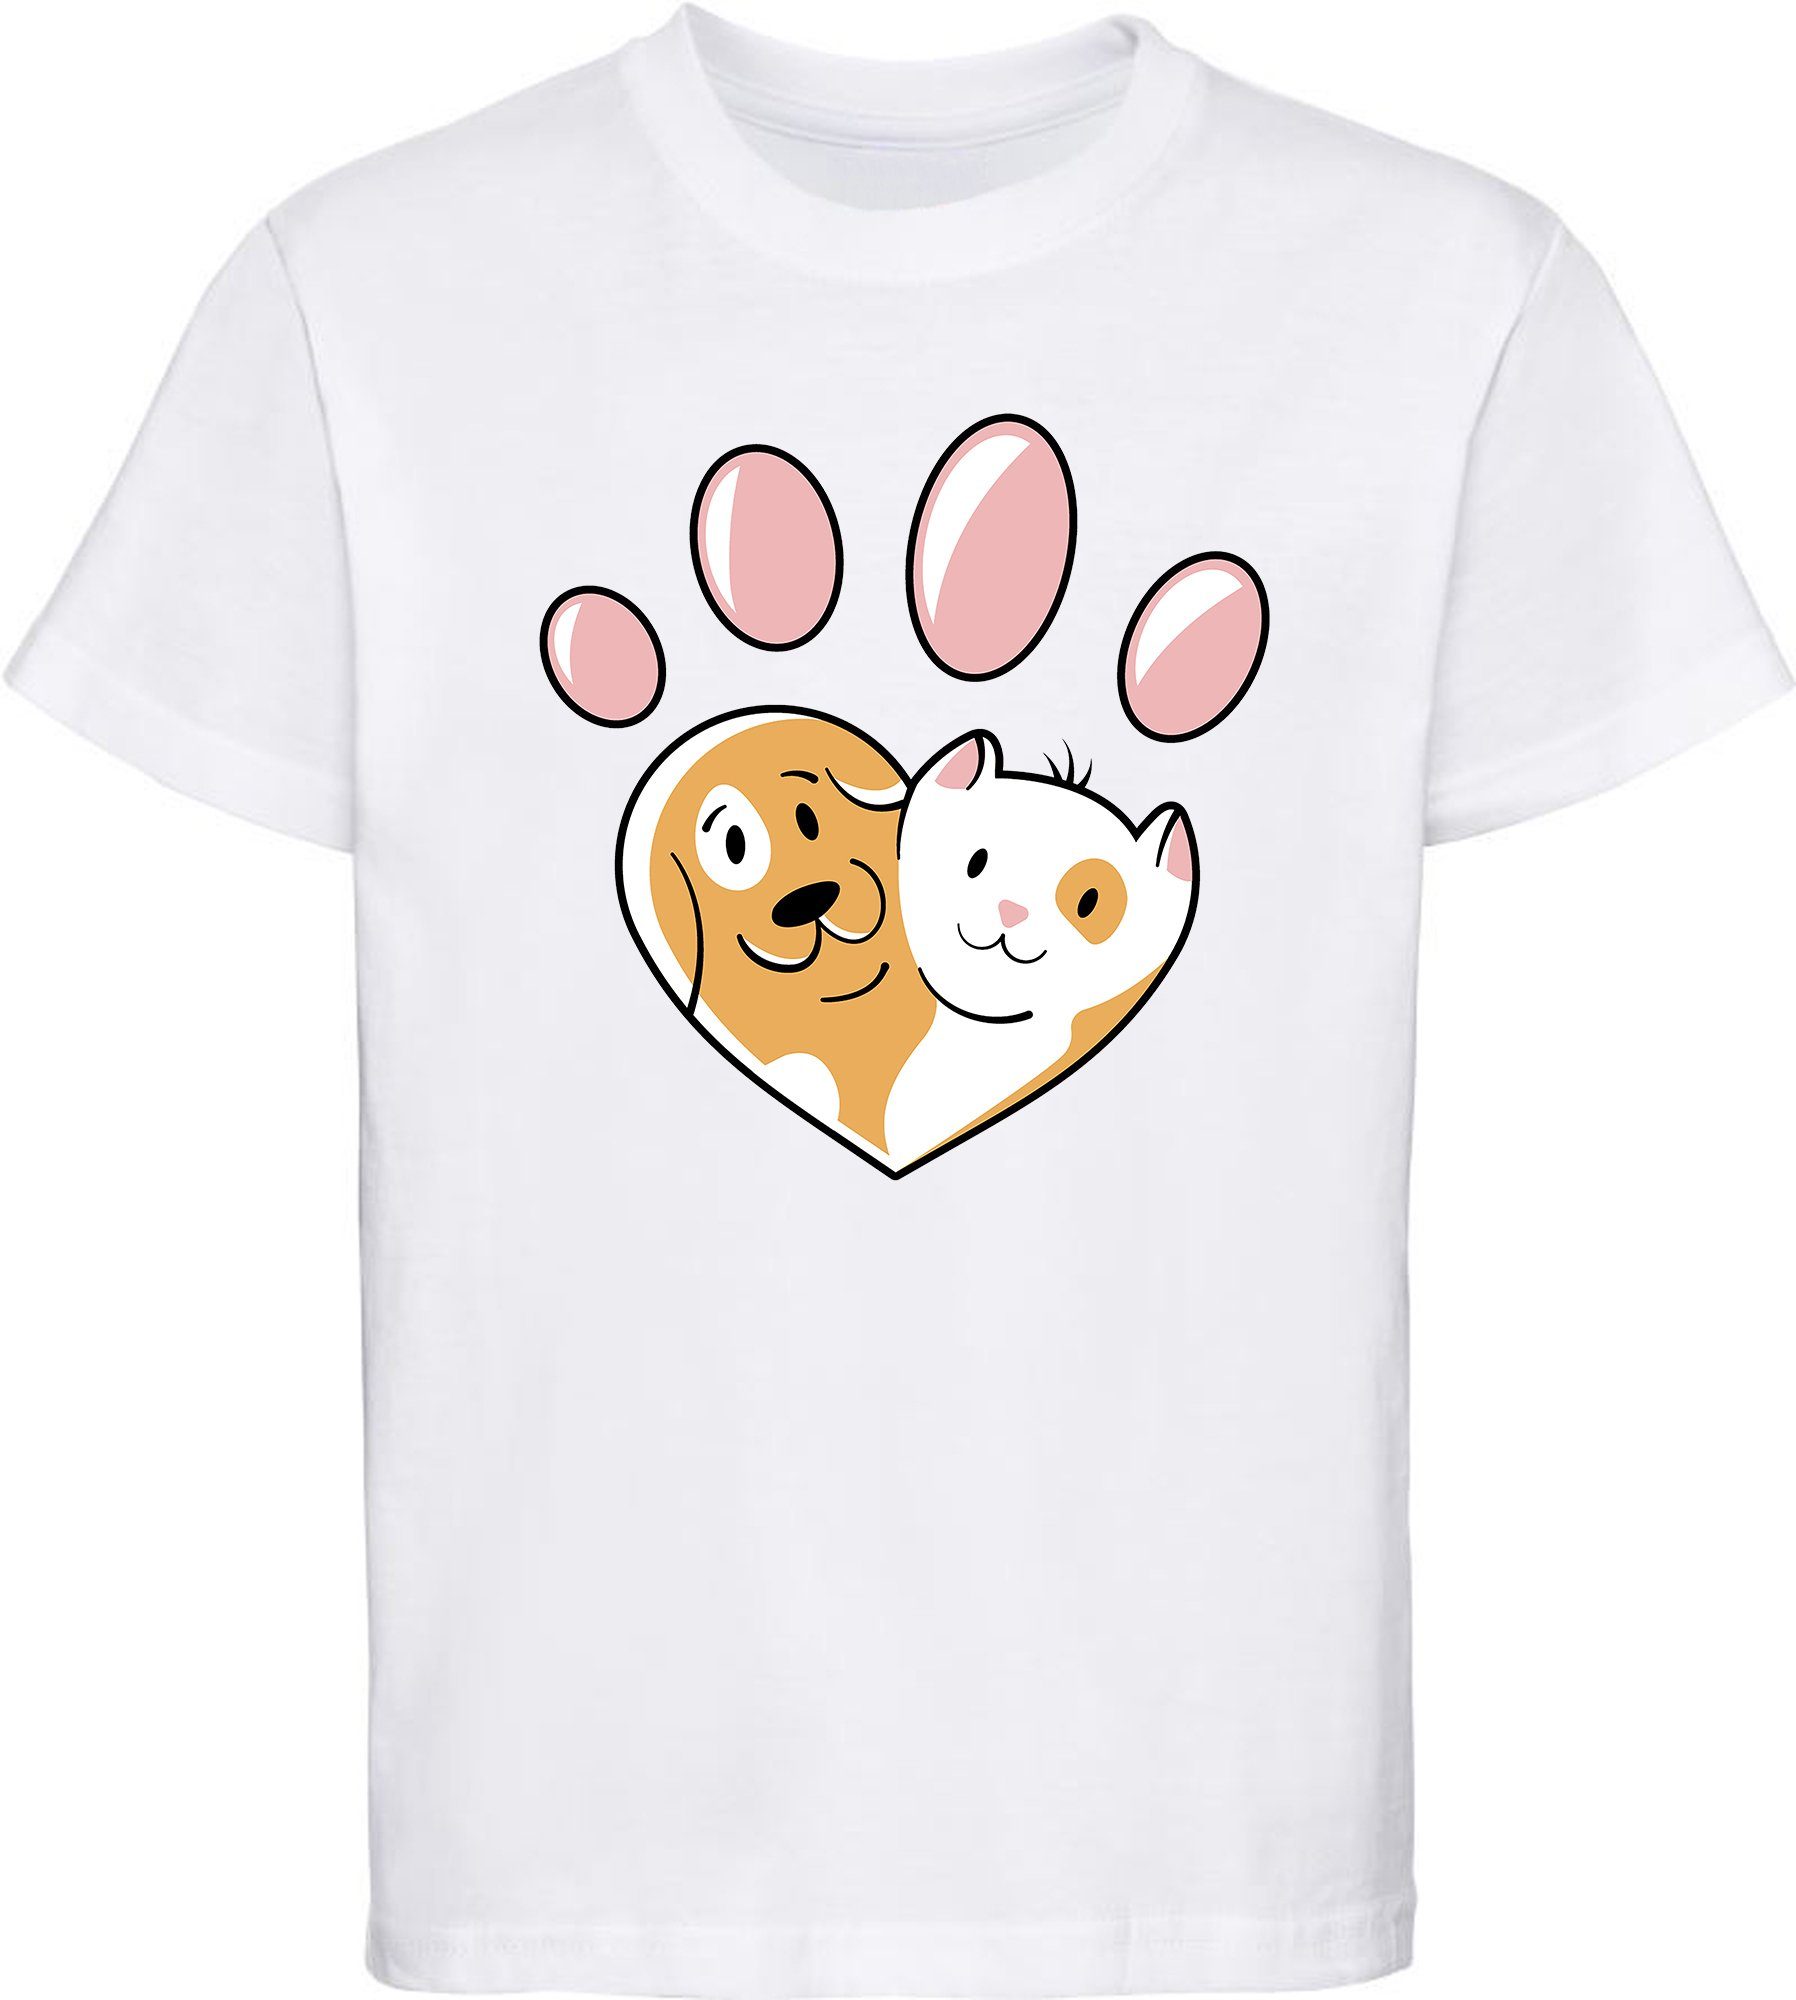 MyDesign24 Print-Shirt bedrucktes Kinder Hunde T-Shirt - Herz Pfote mit Hund und Katze Baumwollshirt mit Aufdruck, i223 weiss